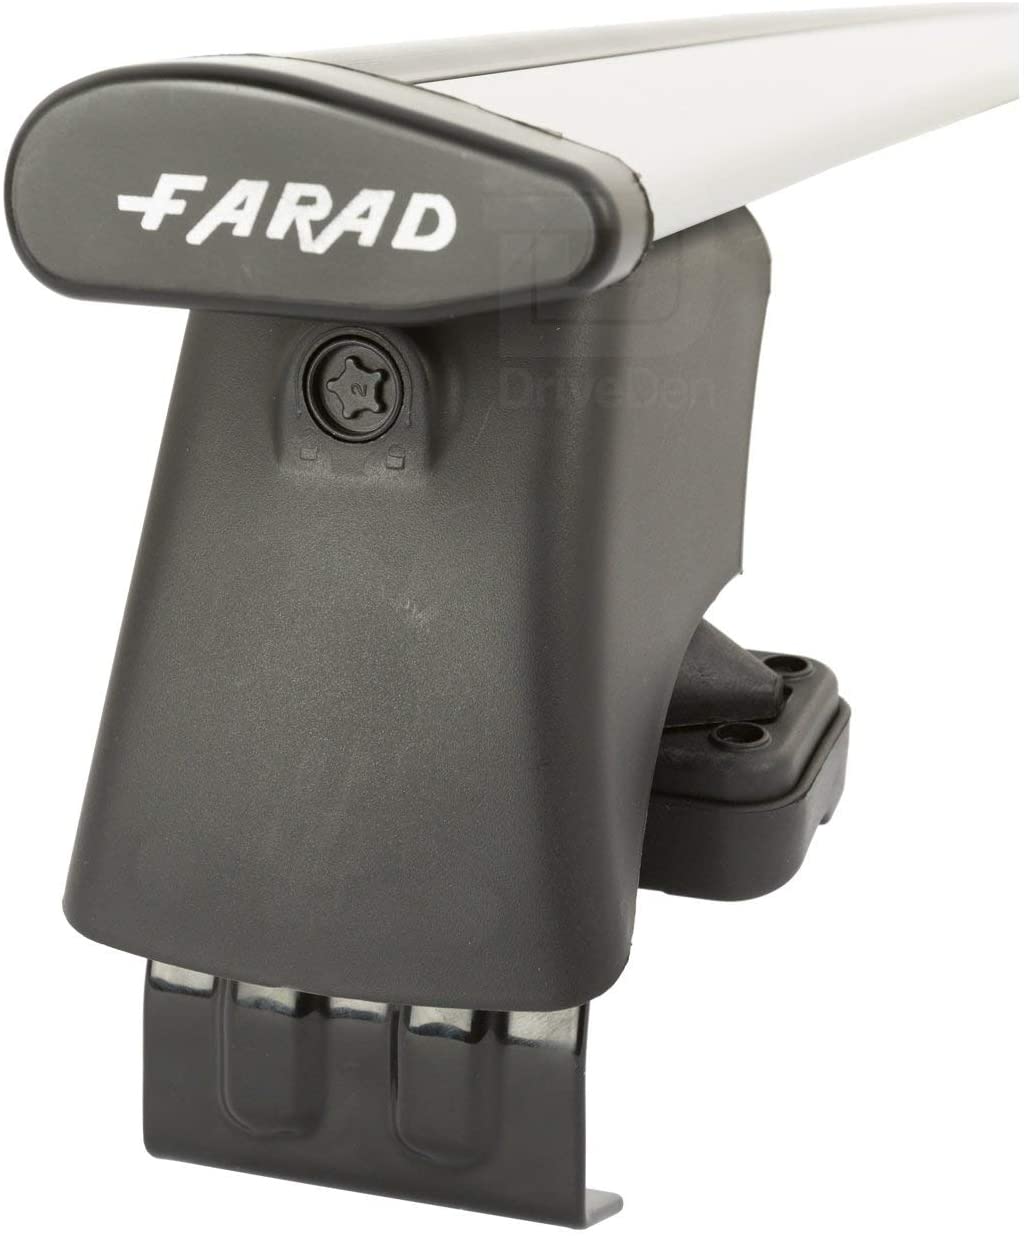 FARAD-Kit H2 per barre portatutto - Seat Leon 2005-2012 (senza corrimano)